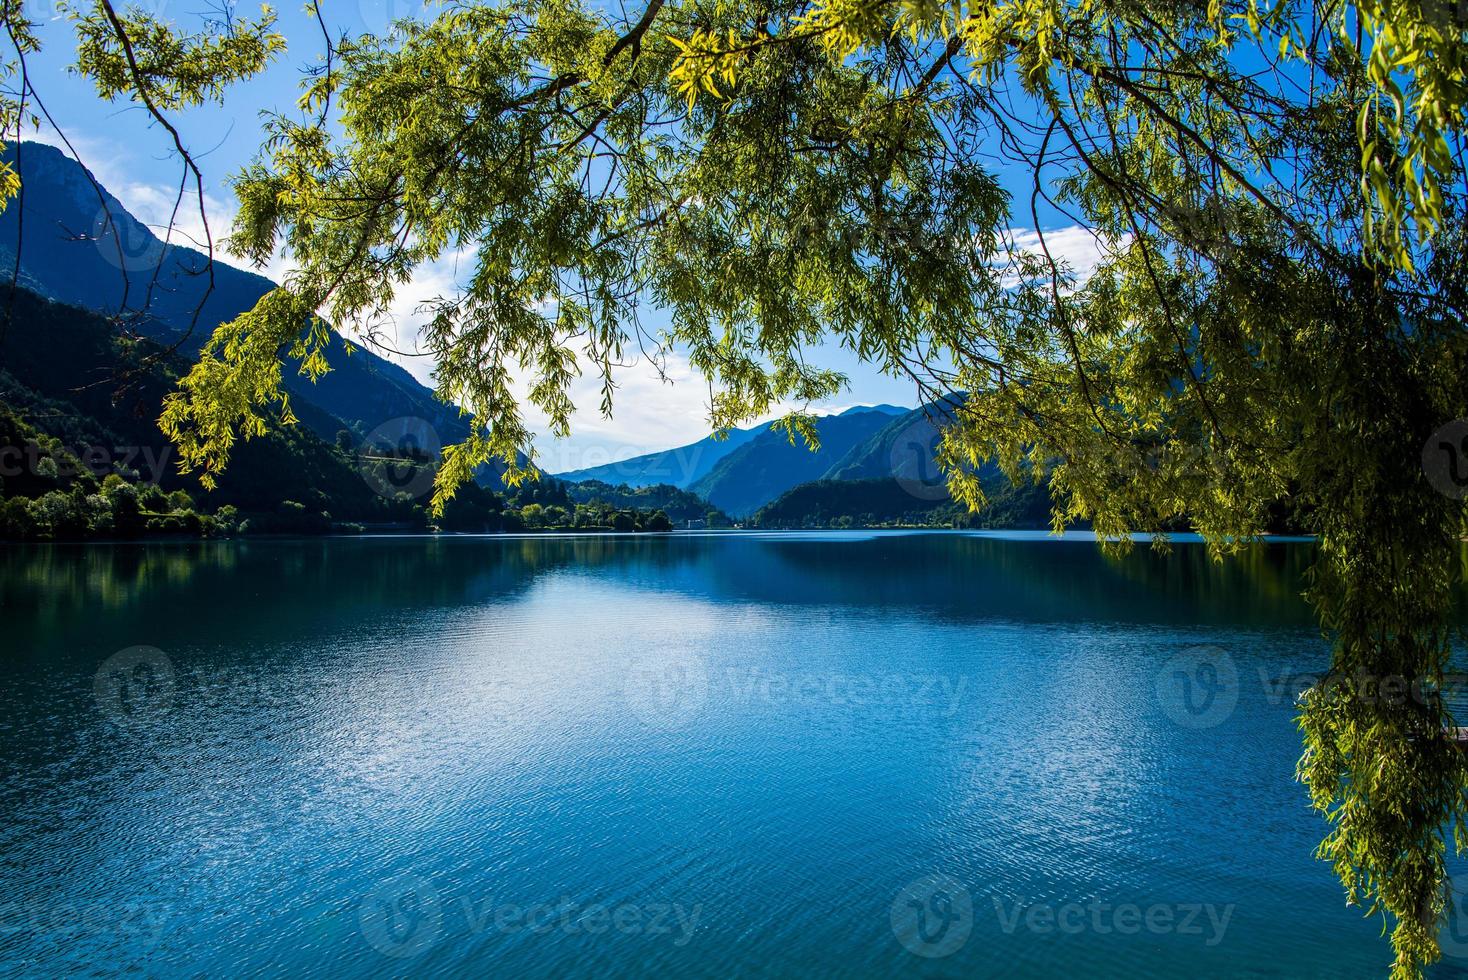 sjö ledro på en solig sommardag nära Trento, Italien foto